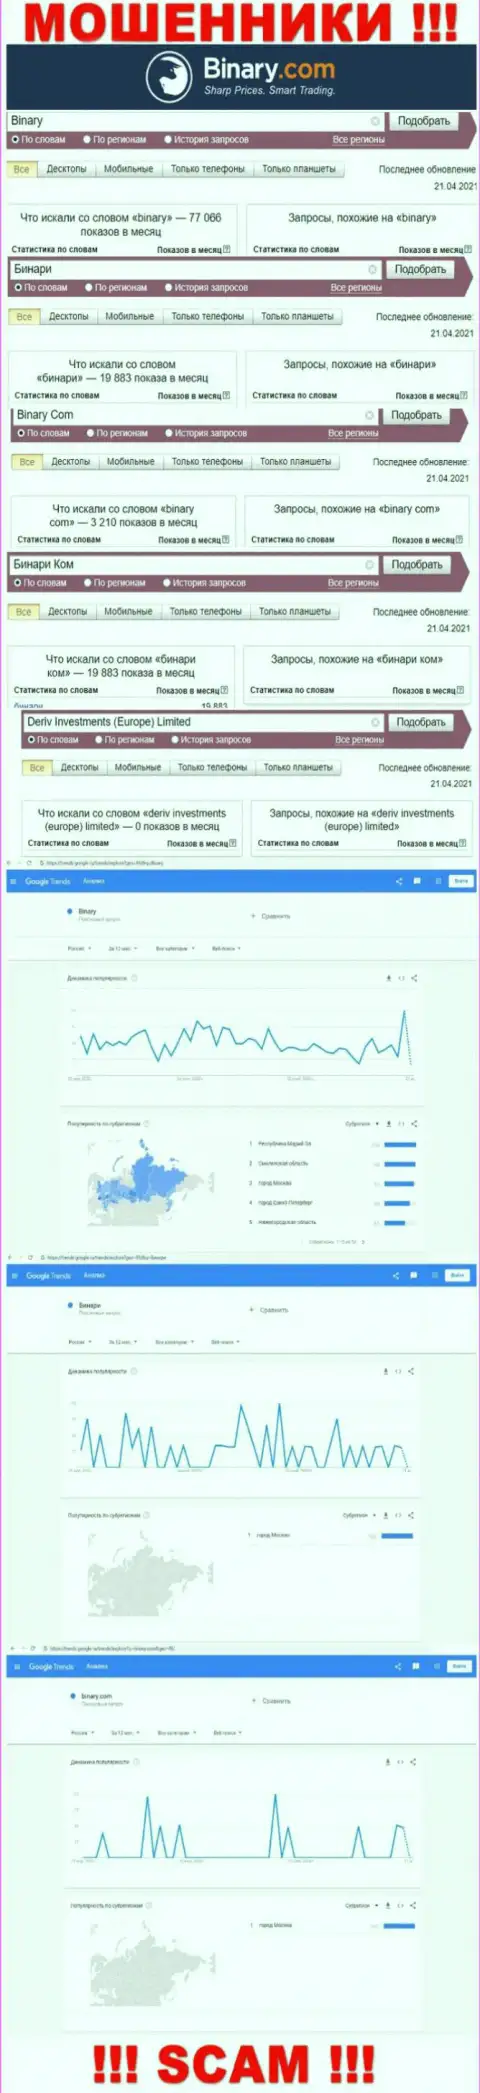 Число поисковых запросов информации о мошенниках Бинари Ком в интернет сети